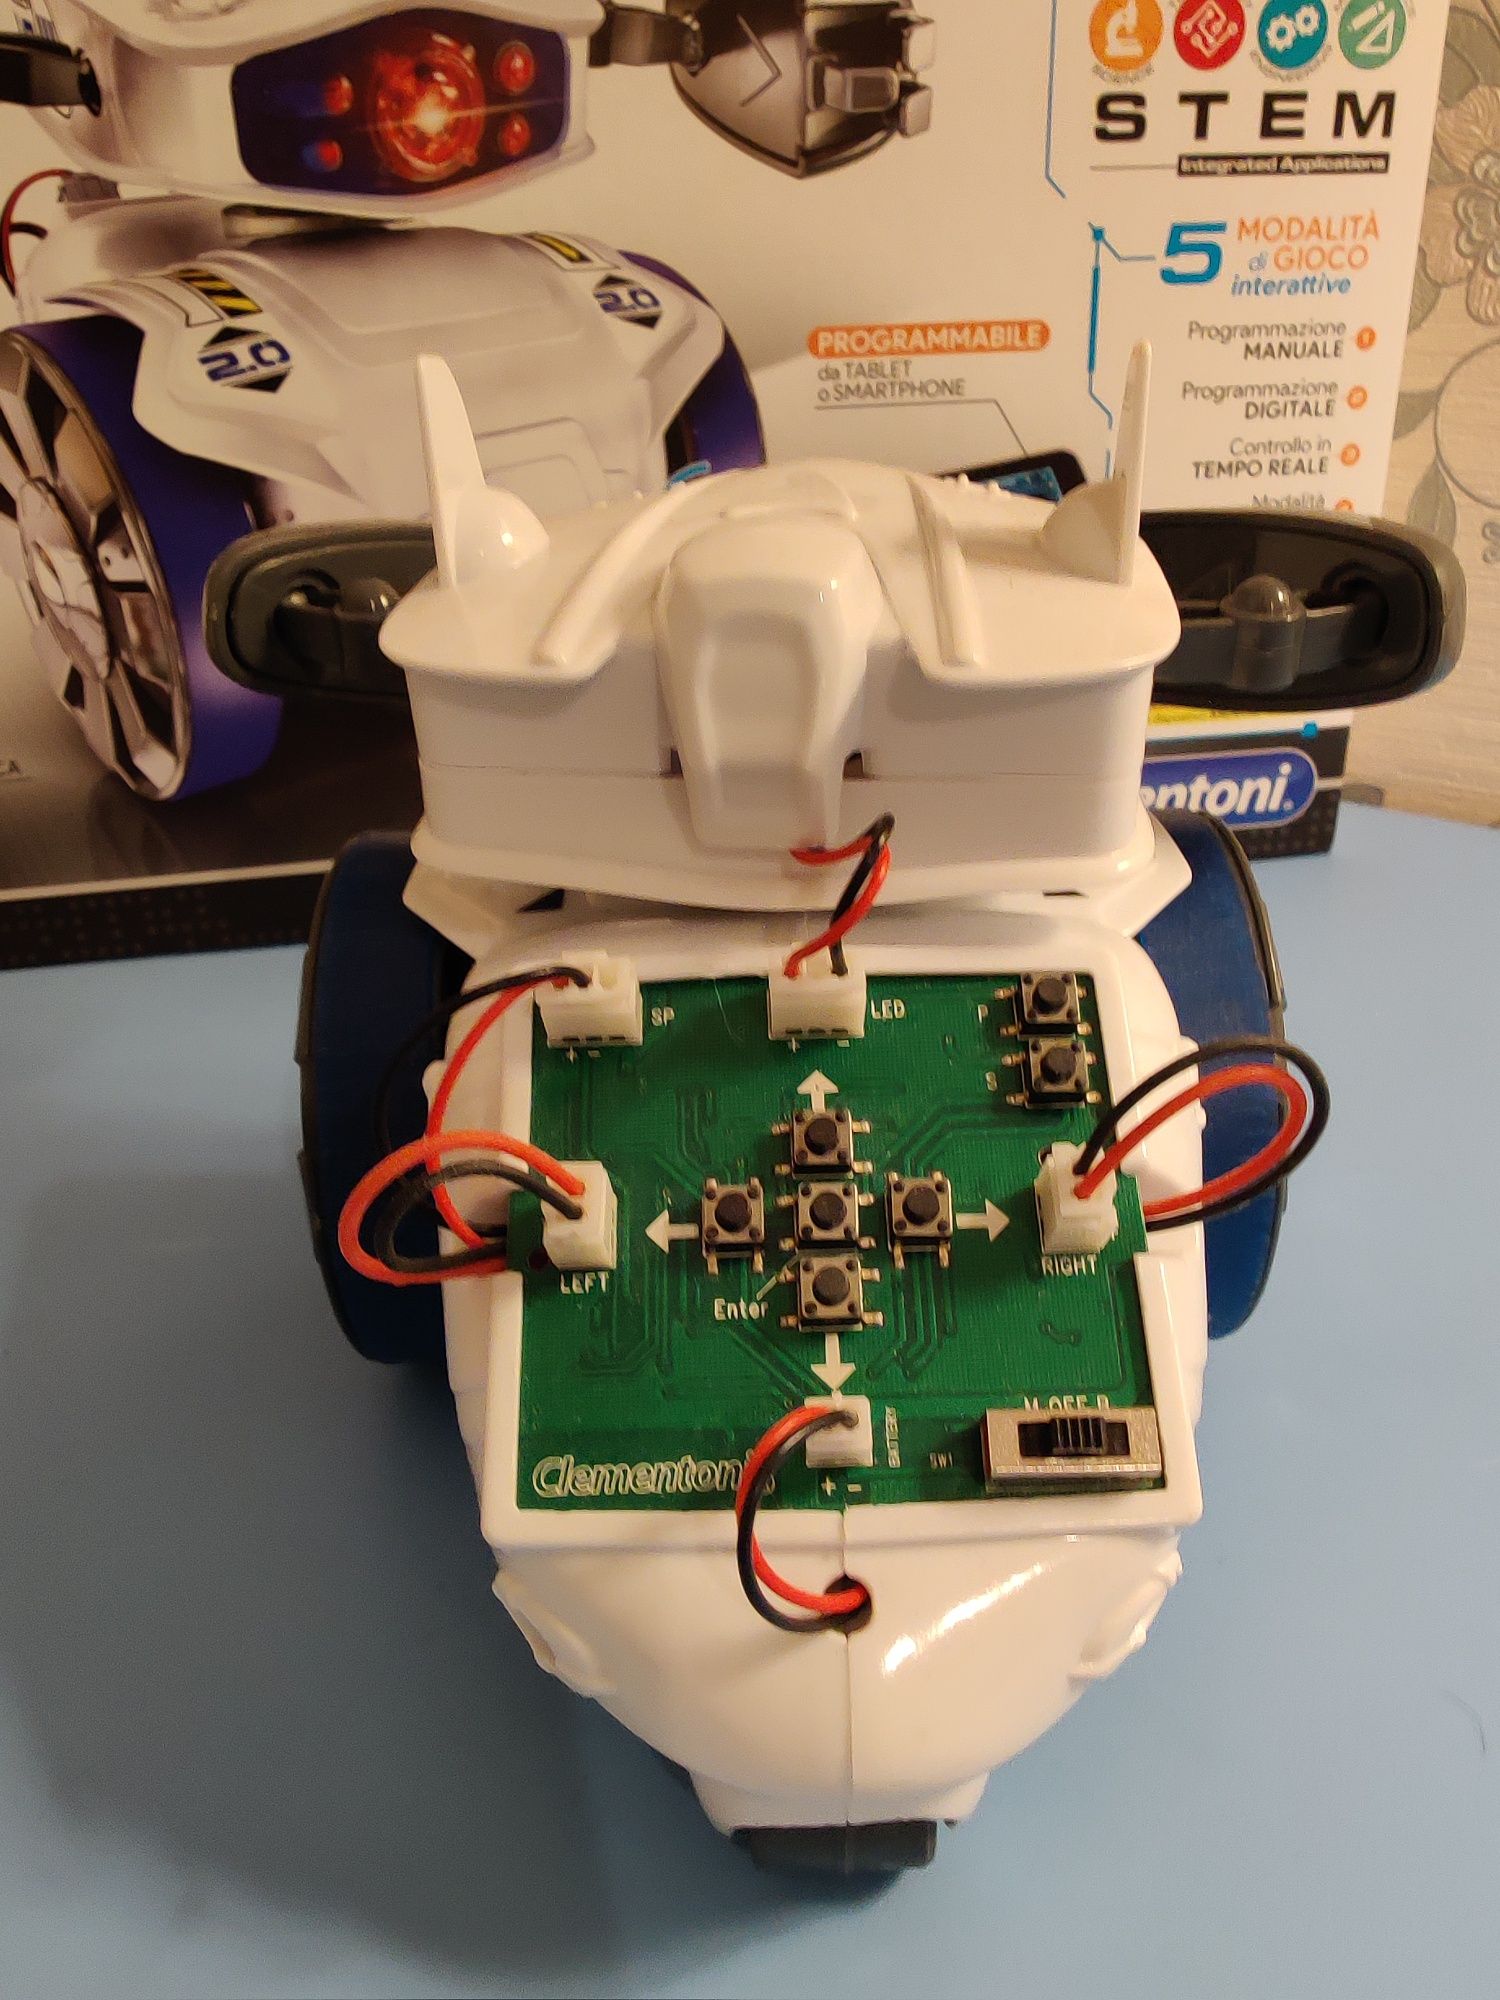 Лабораторія робототехніки Clementonі Cyber Robot Bluetooth